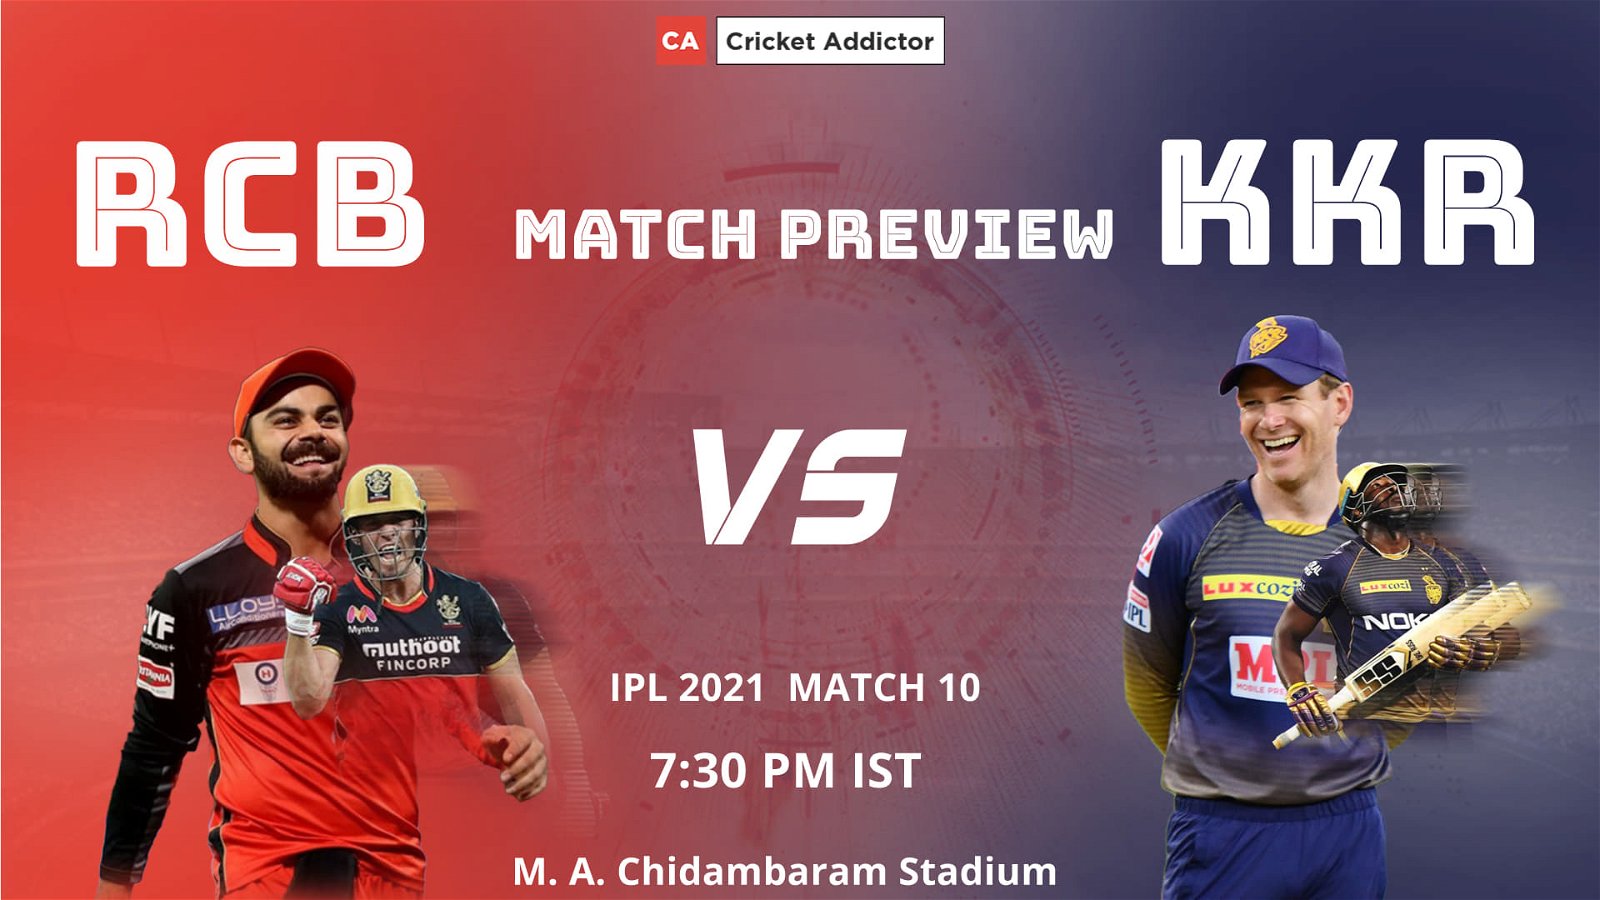 IPL 2021, Royal Challengers Bangalore, Kolkata Knight Riders, RCB vs KKR, Match Preview, Prediction